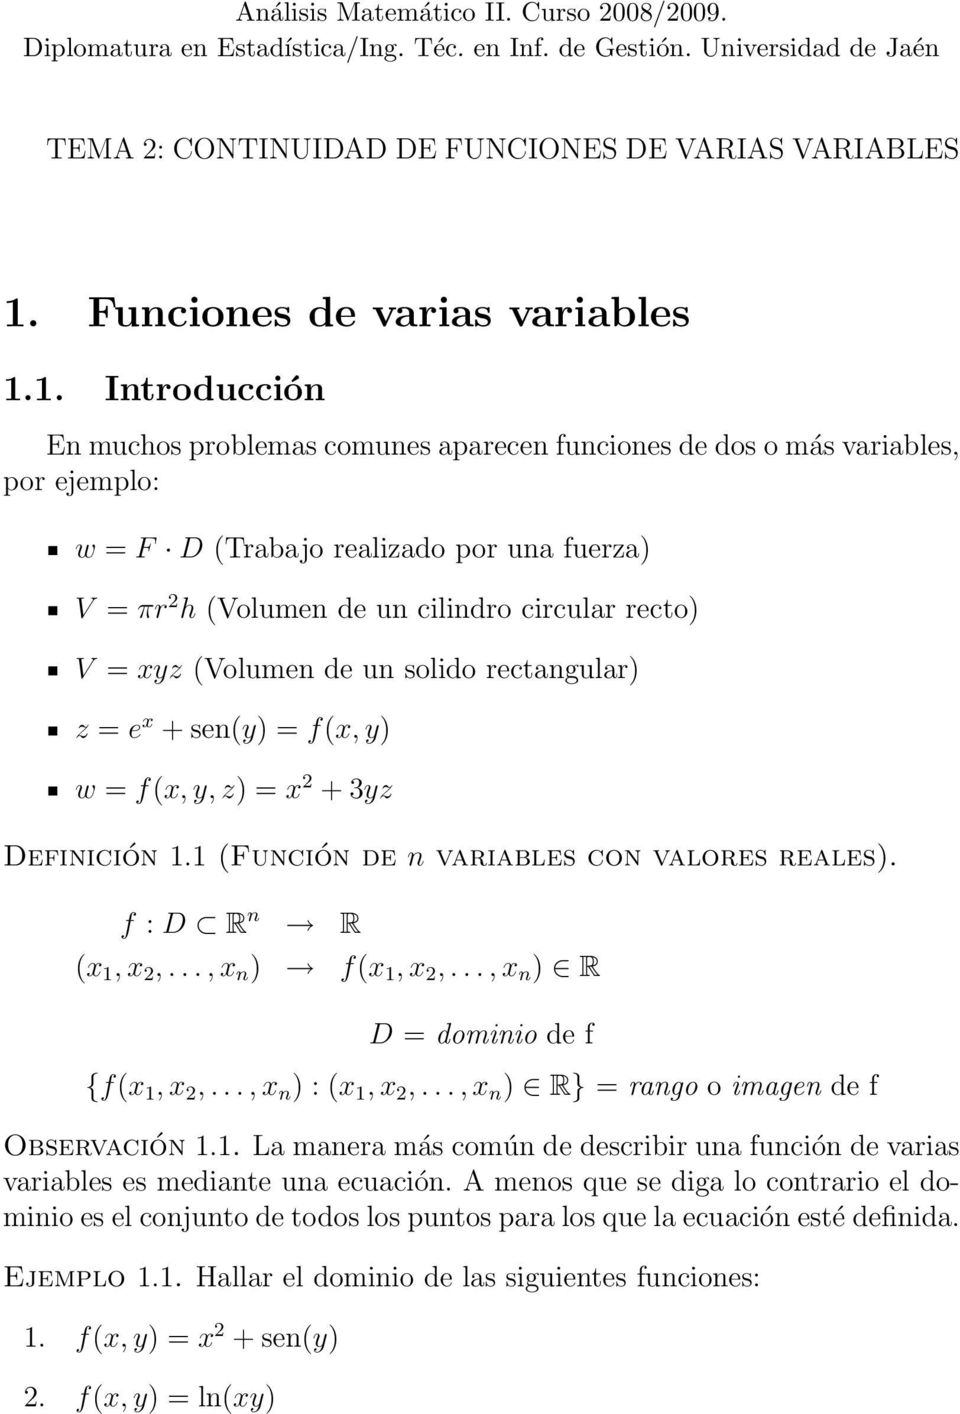 1. Introducción En muchos problemas comunes aparecen funciones de dos o más variables, por ejemplo: w = F D (Trabajo realizado por una fuerza) V = πr 2 h (Volumen de un cilindro circular recto) V =